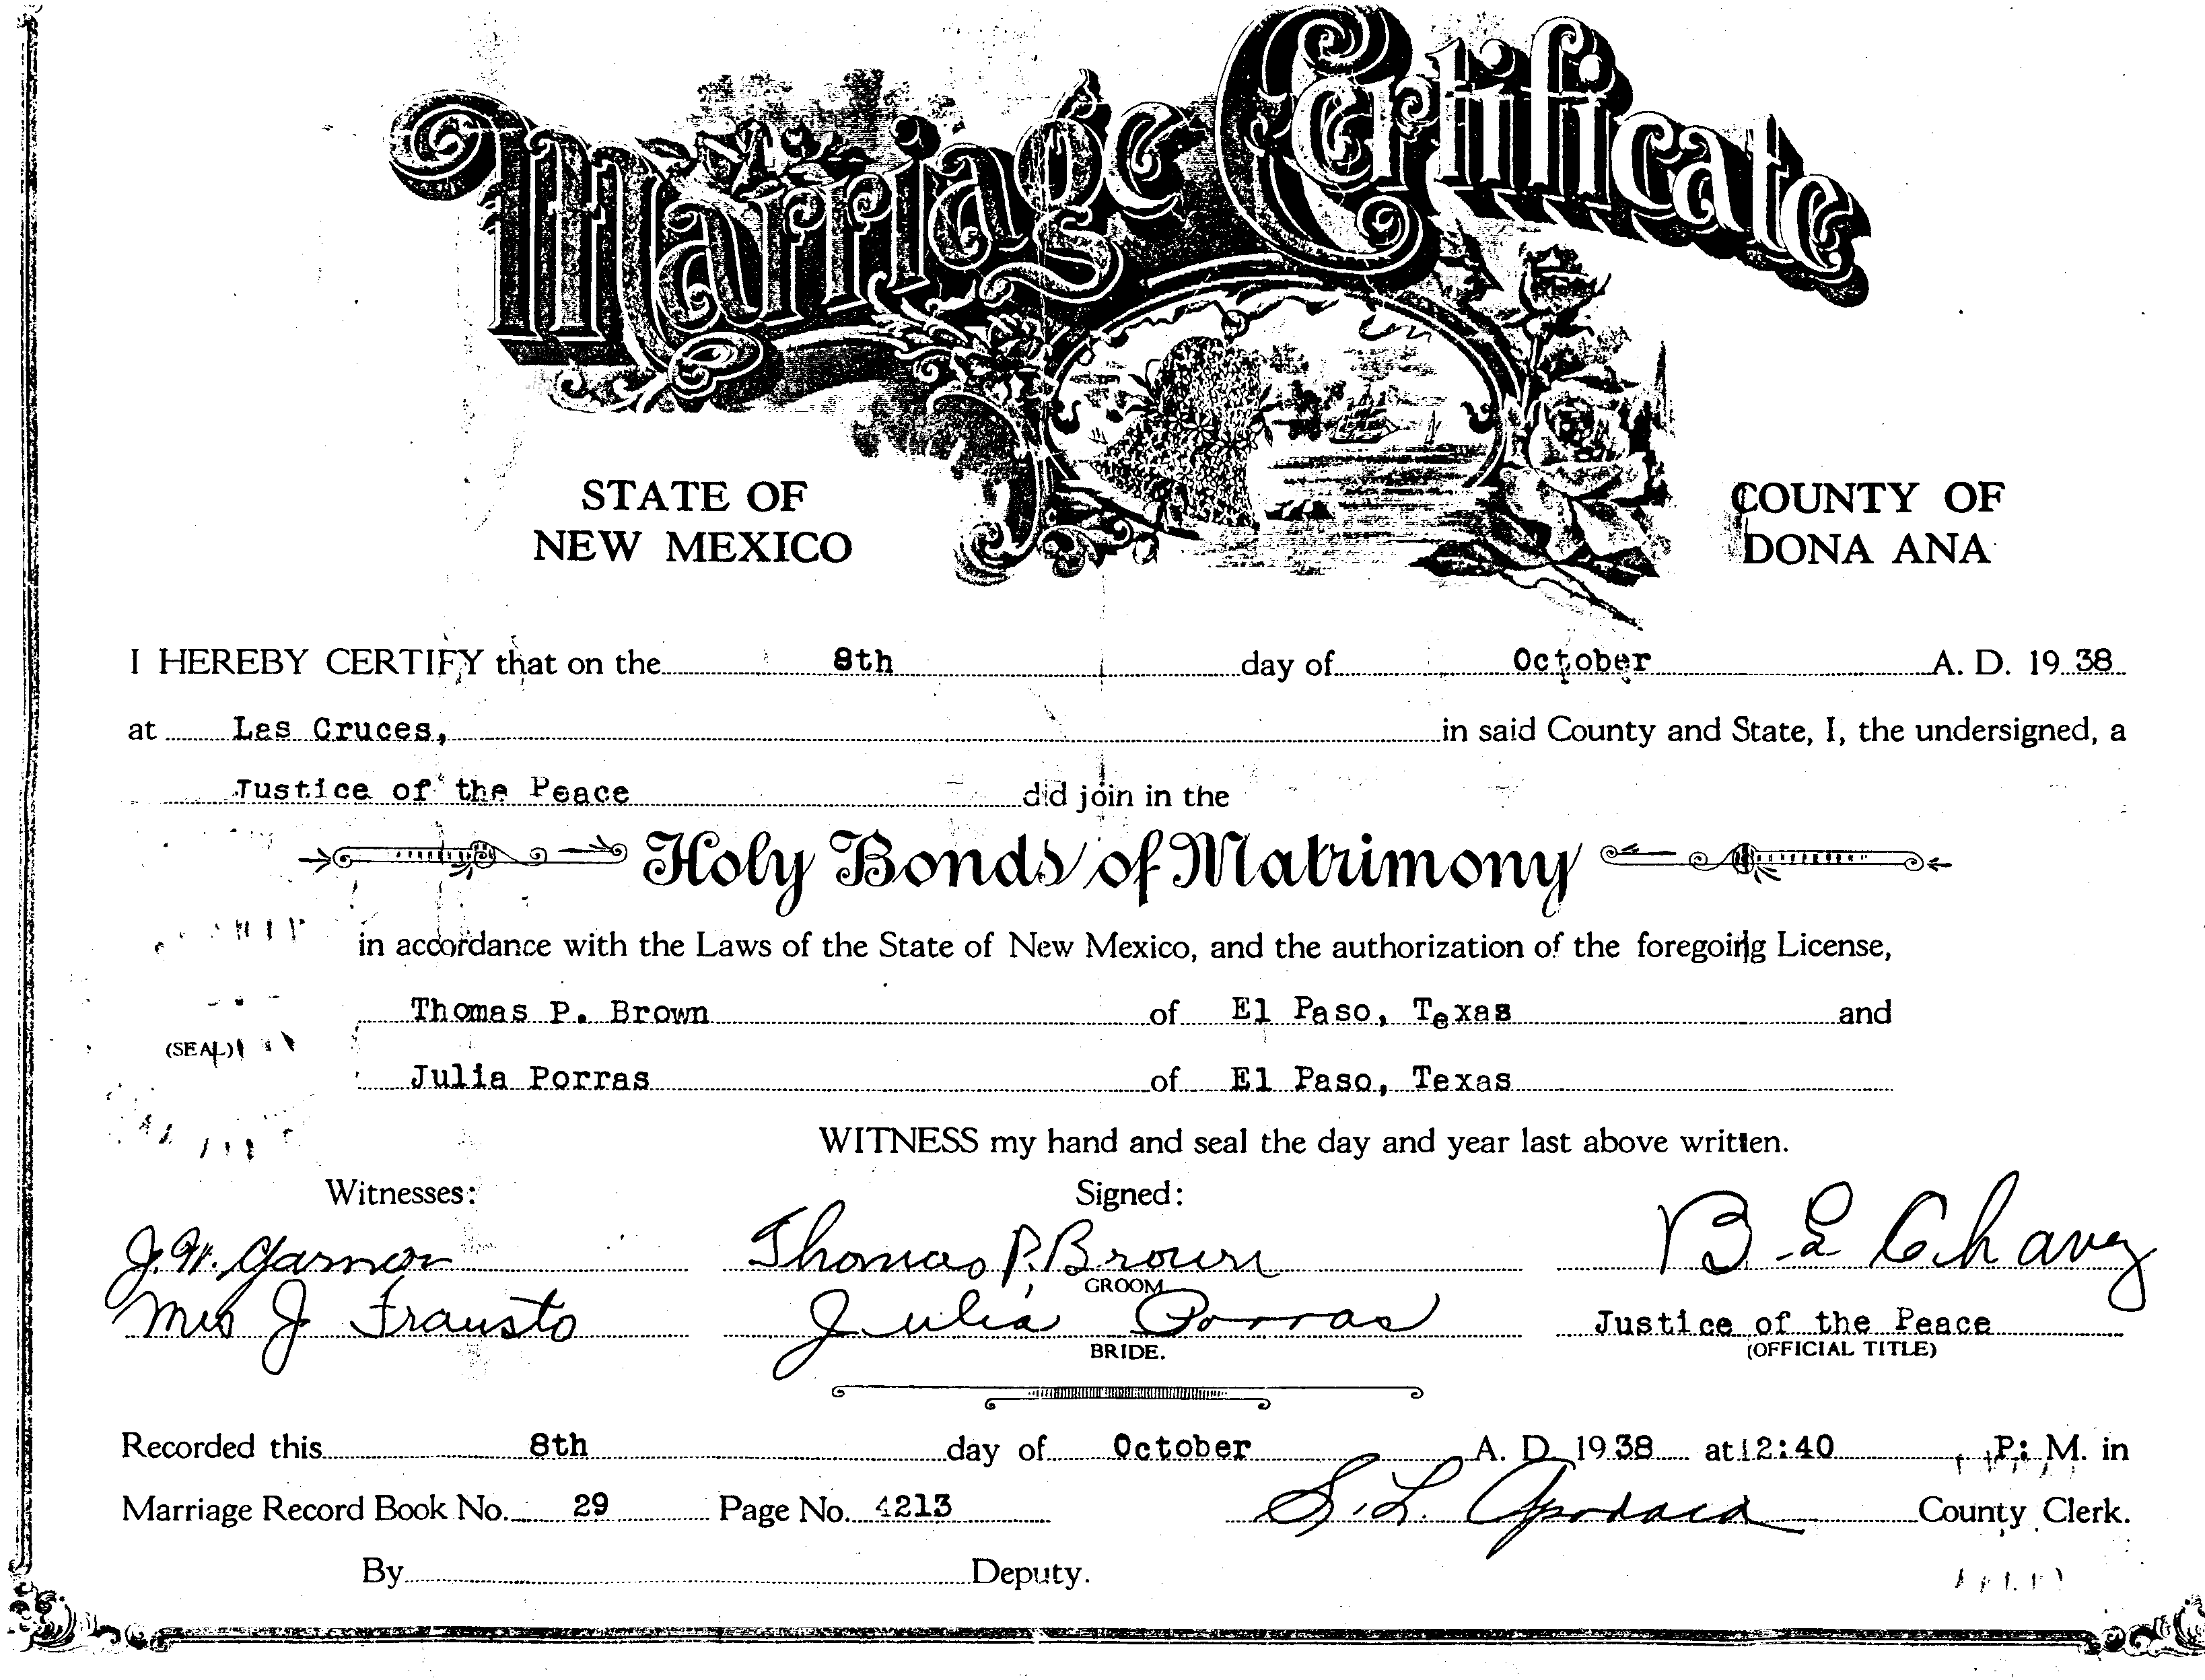 October 8, 1938 wedding certificate for Juliana Porras de Cardenas and Thomas Pl Brown in El Paso, Texas